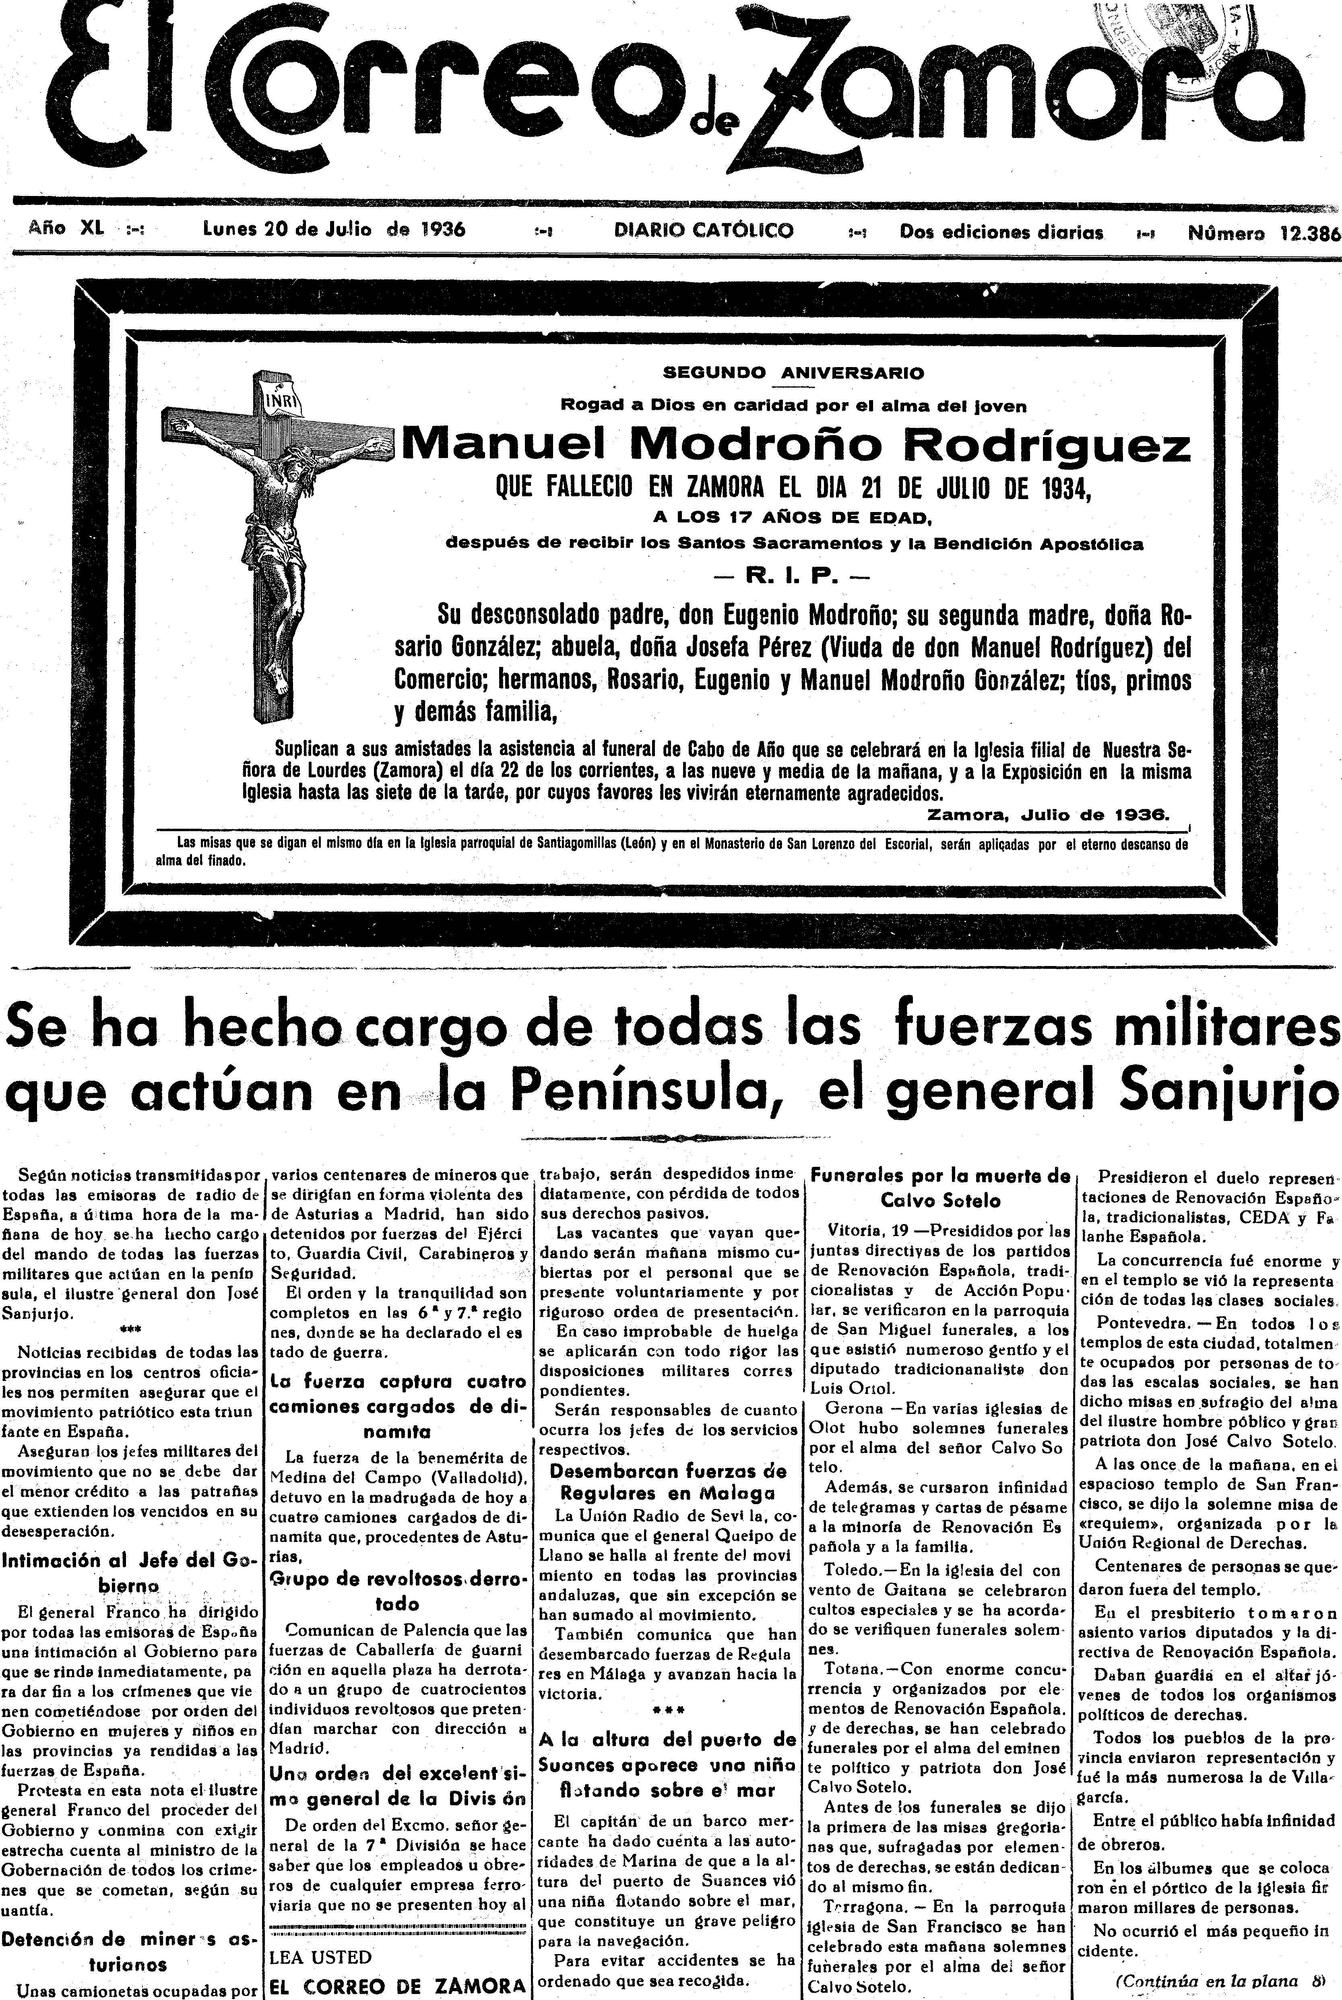 El Correo de Zamora, 20 de julio de 1936. Guerra Civil.